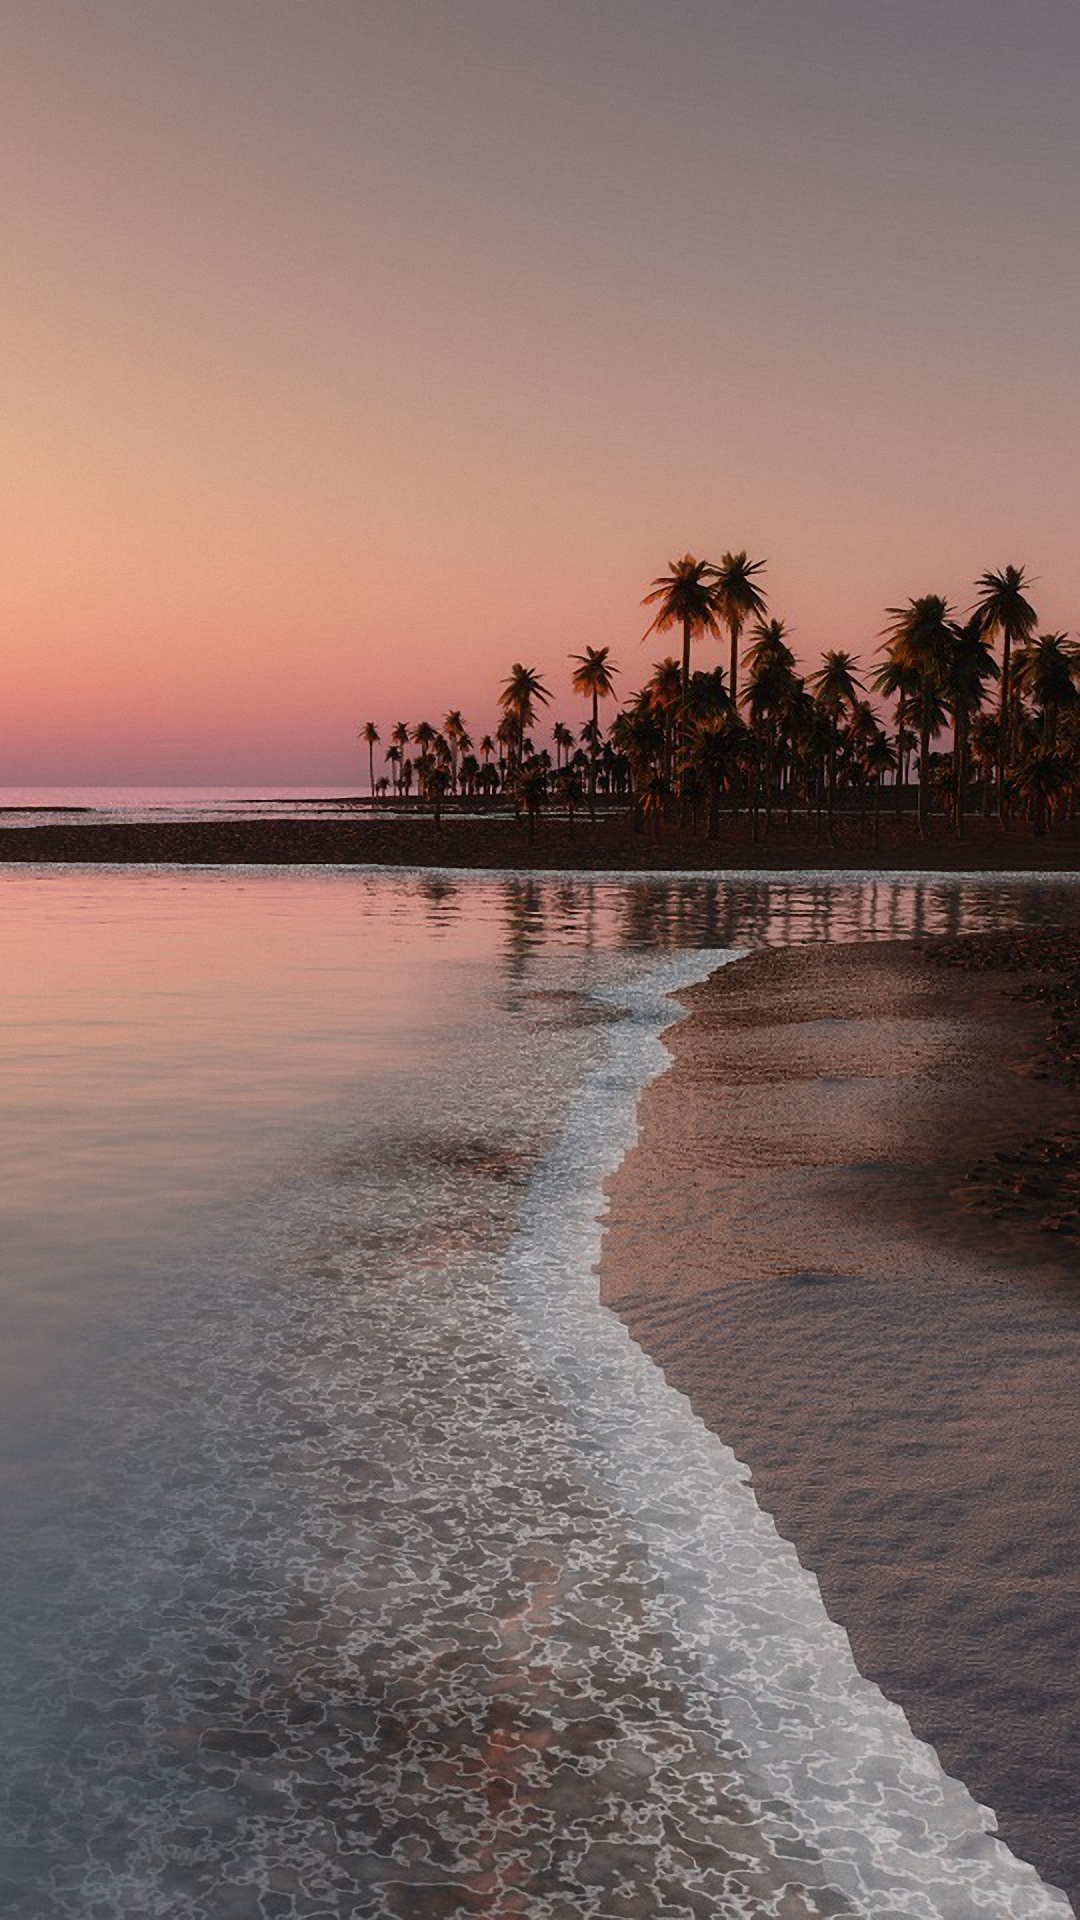 Iphone X Wallpaper Beach Sunset - HD Wallpaper 